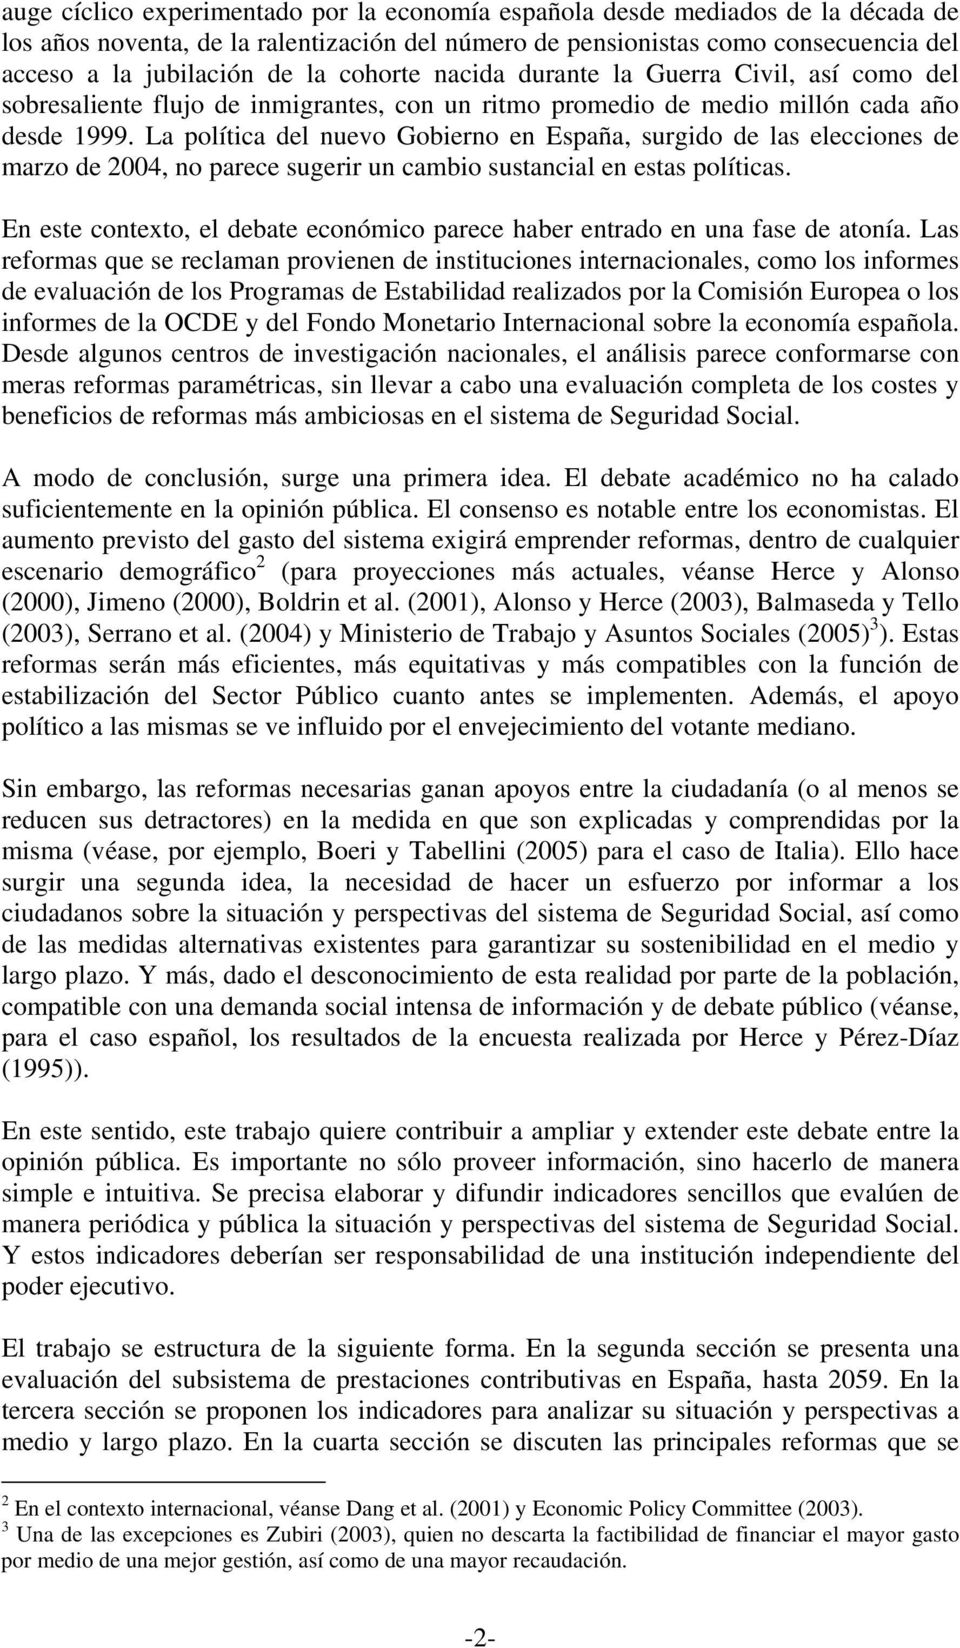 La política del nuevo Gobierno en España, surgido de las elecciones de marzo de 2004, no parece sugerir un cambio sustancial en estas políticas.